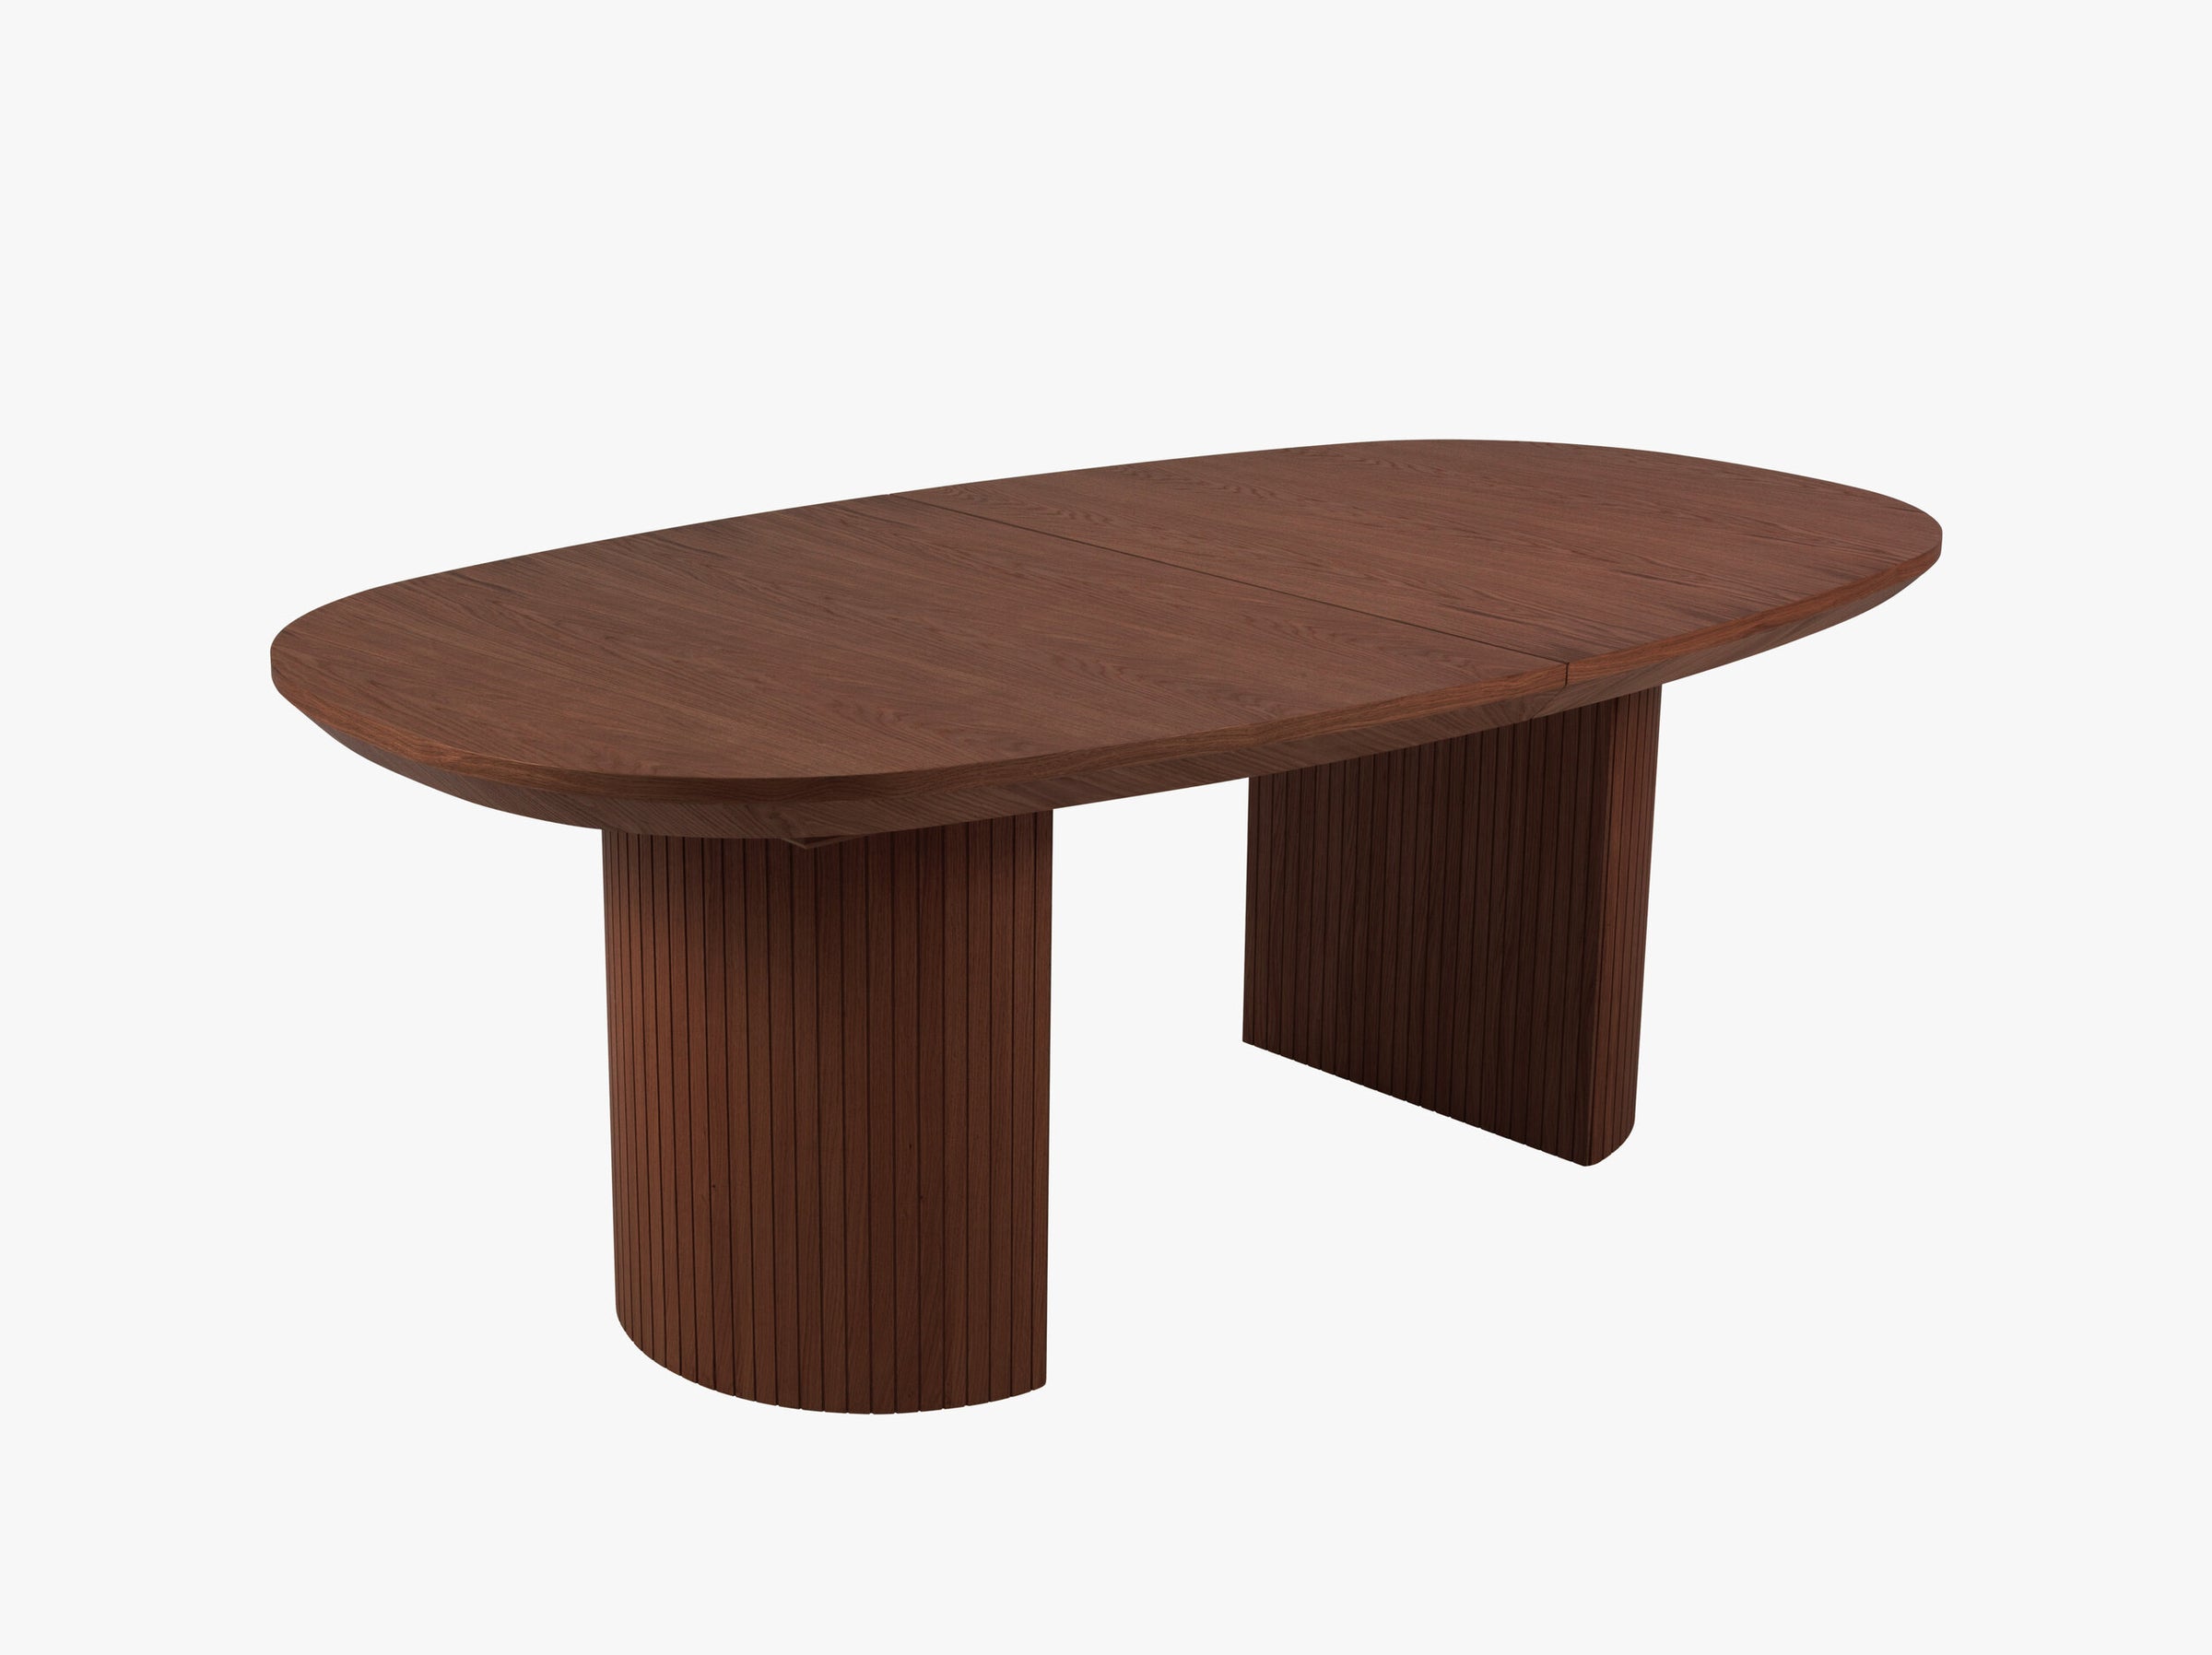 Nido tavoli e sedie legno impiallacciatura in rovere scuro e rovere marrone scuro